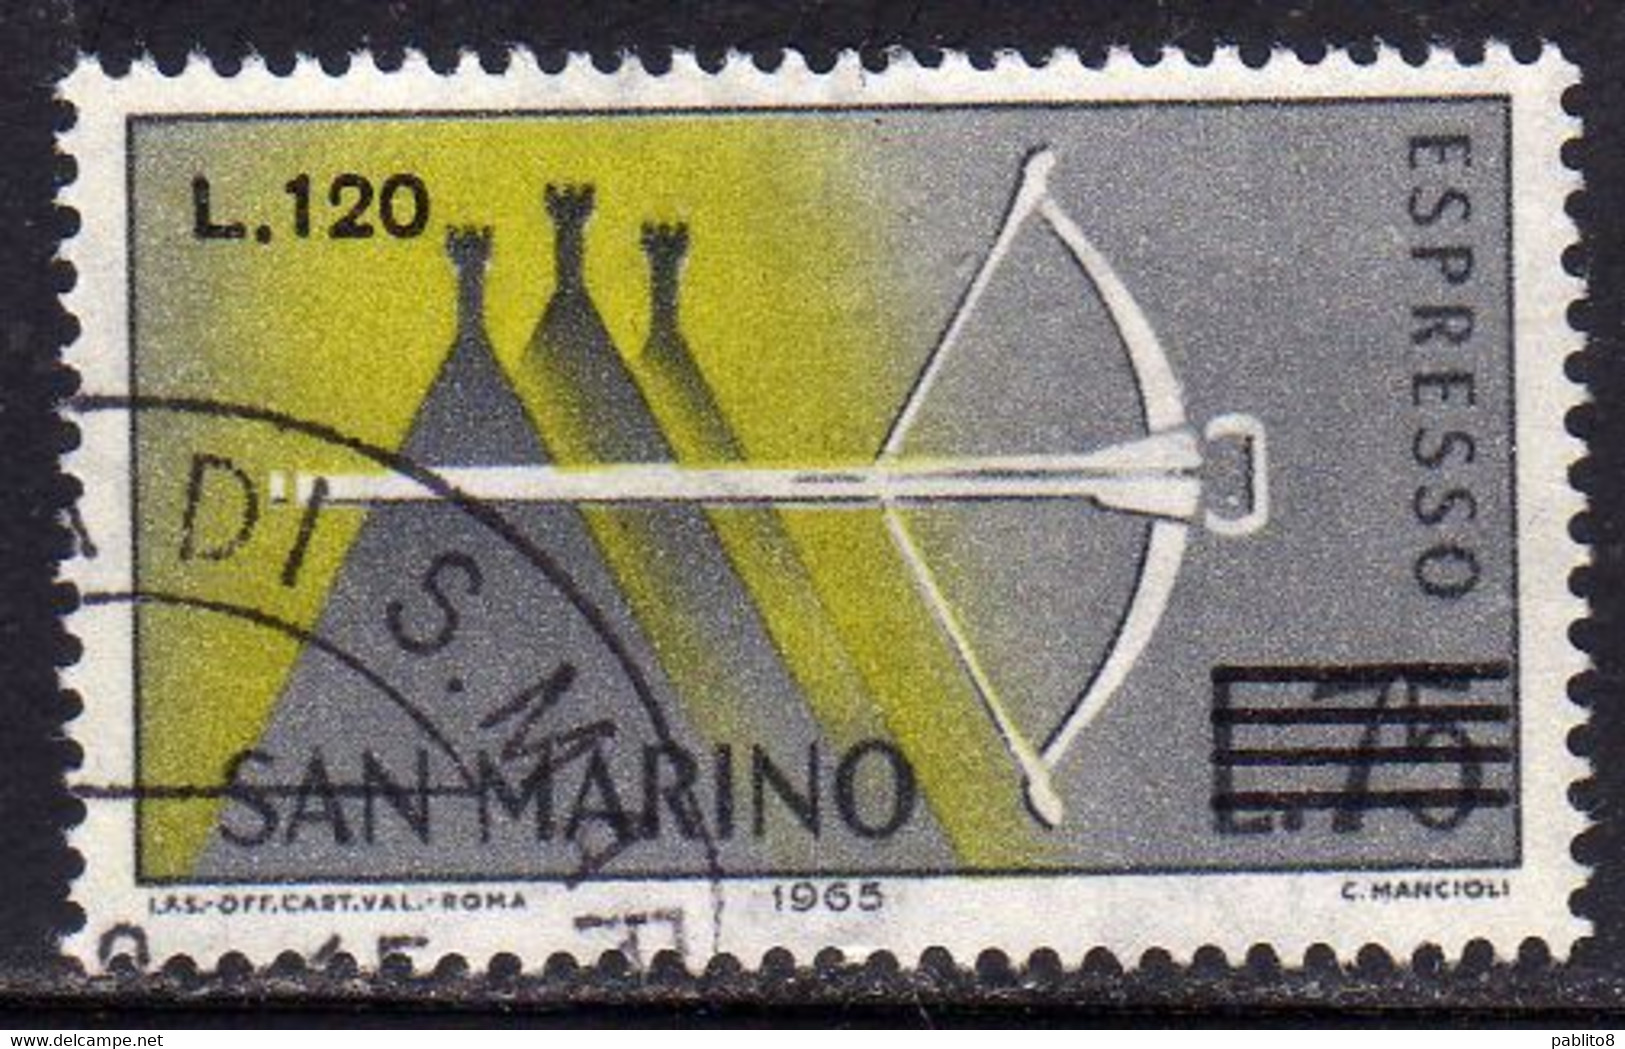 REPUBBLICA DI SAN MARINO 1965 ESPRESSI SPECIAL DELIVERY BALESTRA SOPRASTAMPATO SURCHARGED LIRE 120 SU 75 USATO USED - Express Letter Stamps